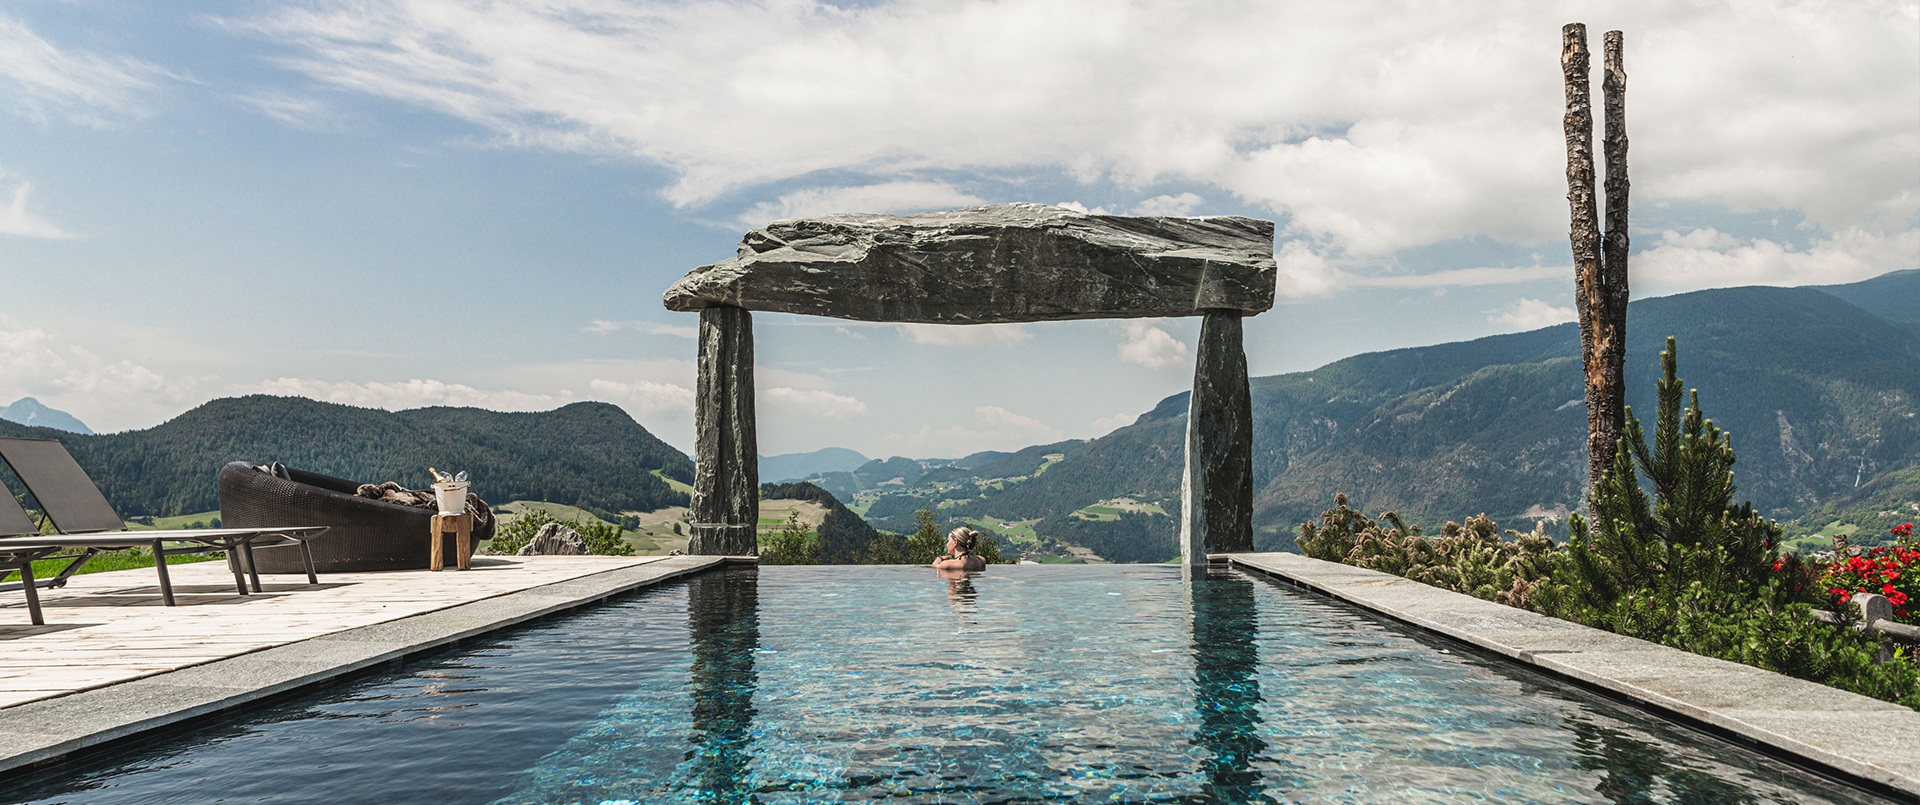 Chalet Resort Zu Kirchwies - Wanderurlaub in den Dolomiten in Südtirol